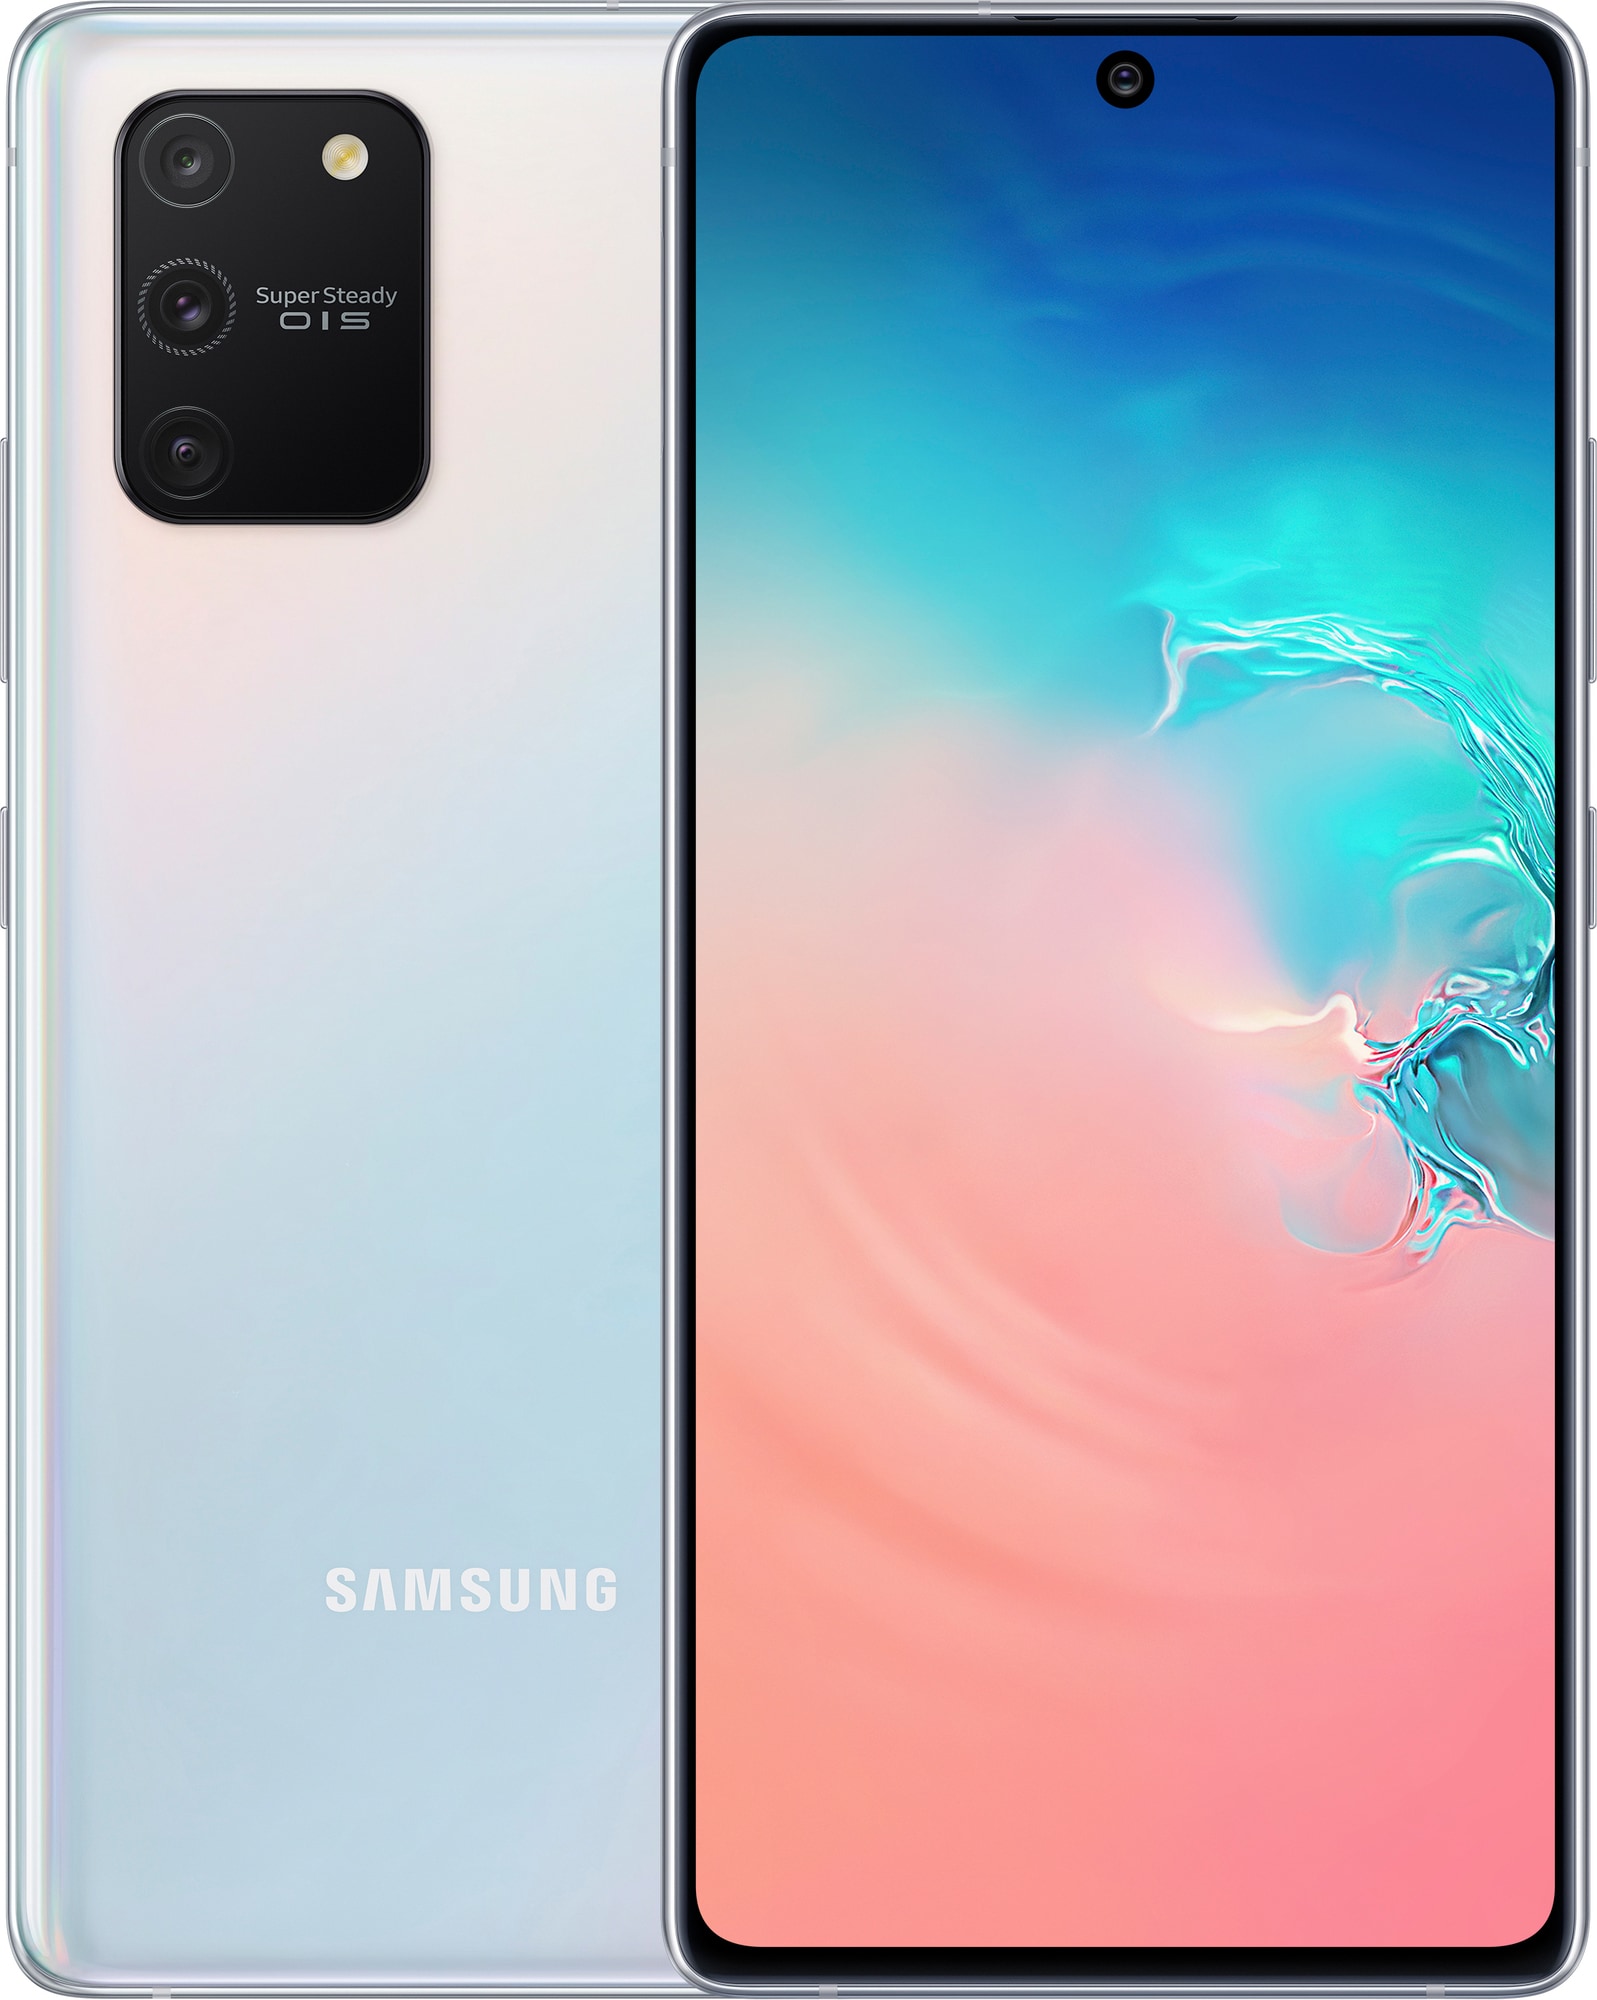 Samsung Galaxy S10 Lite smarttelefon (prism white) - Elkjøp